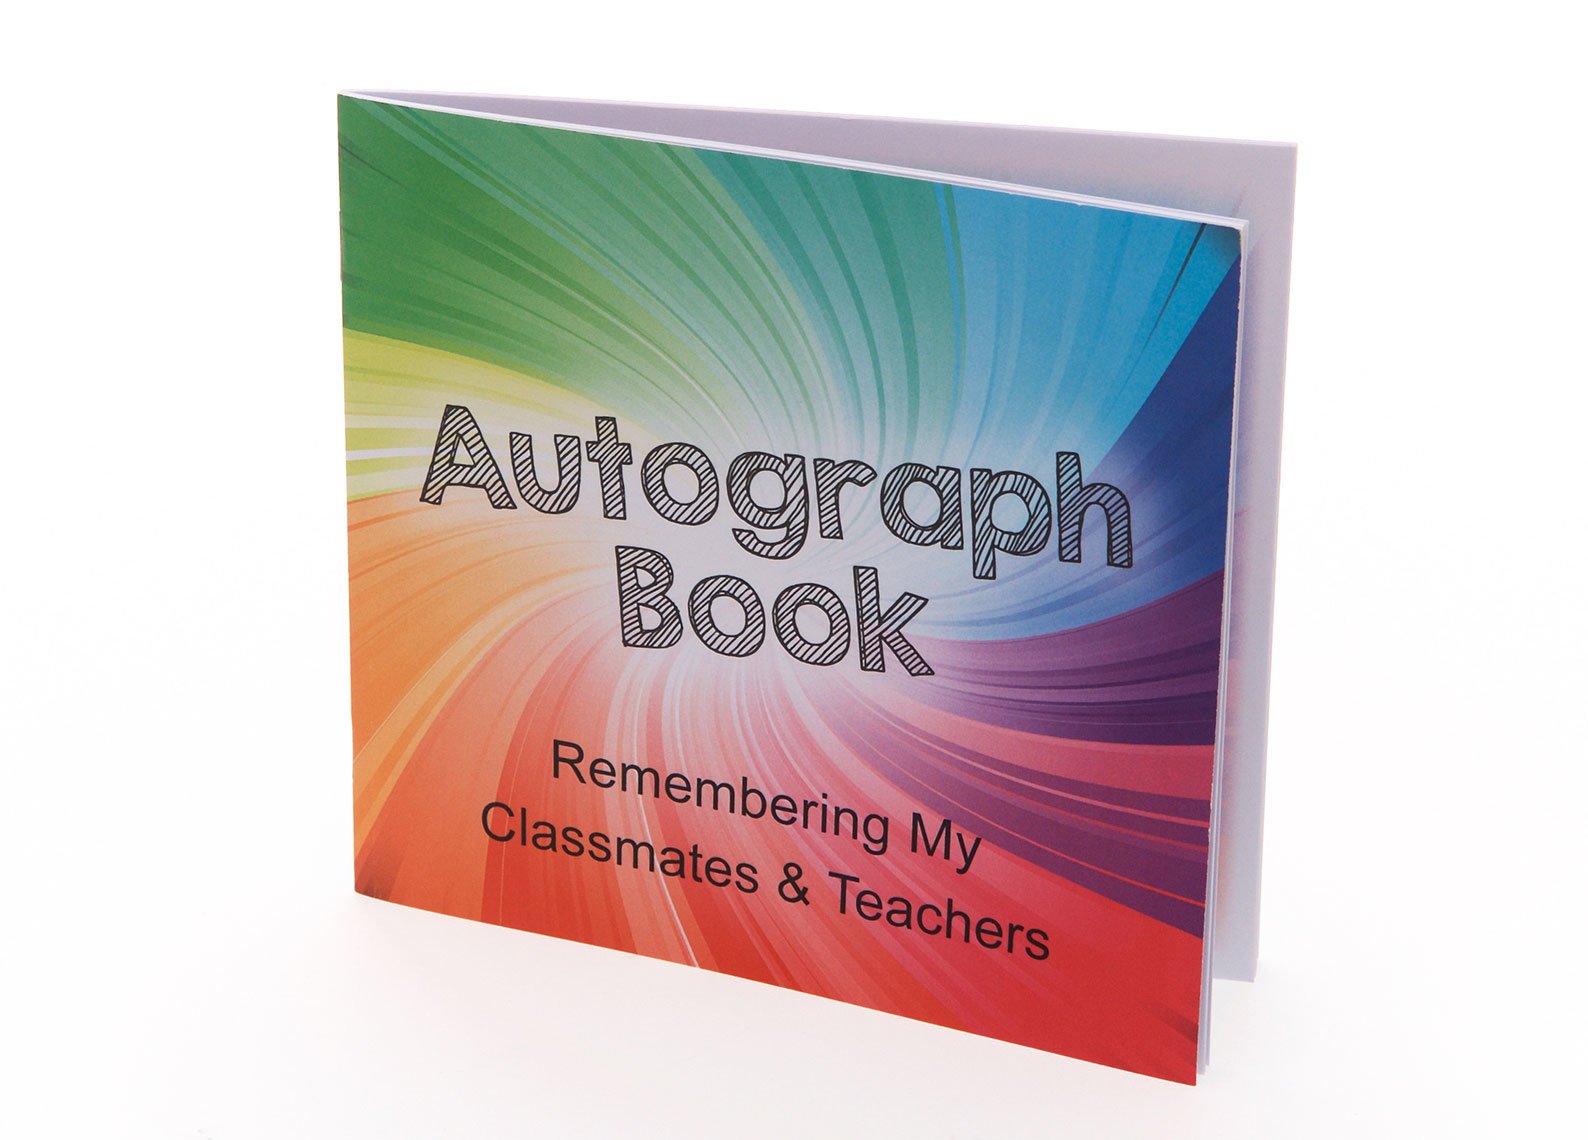 Autograph Books